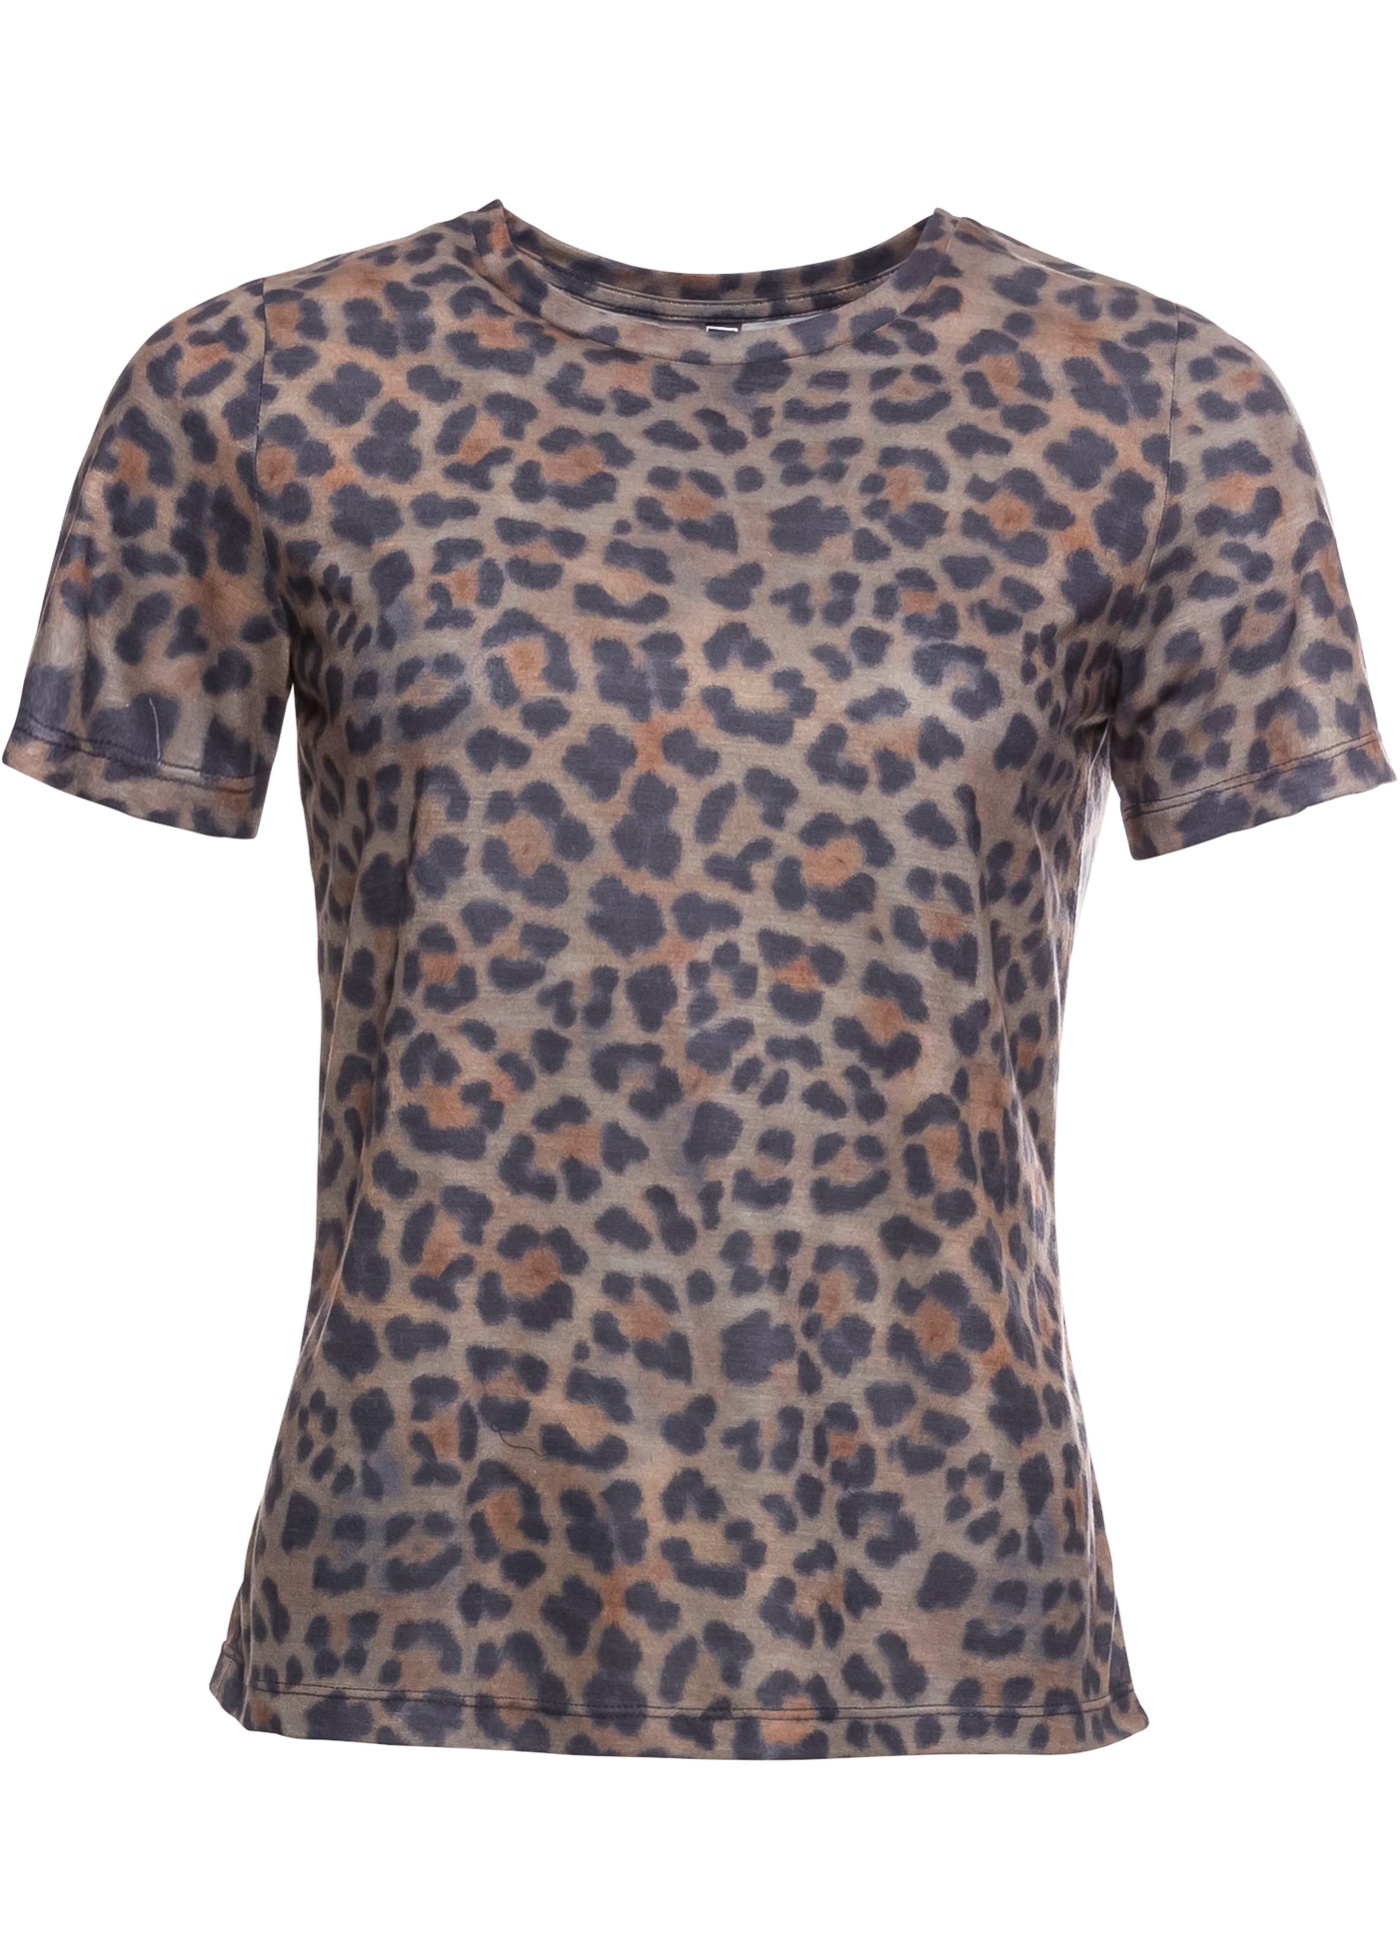 Bonprix - Leopardm??nstrad T-shirt 149.00